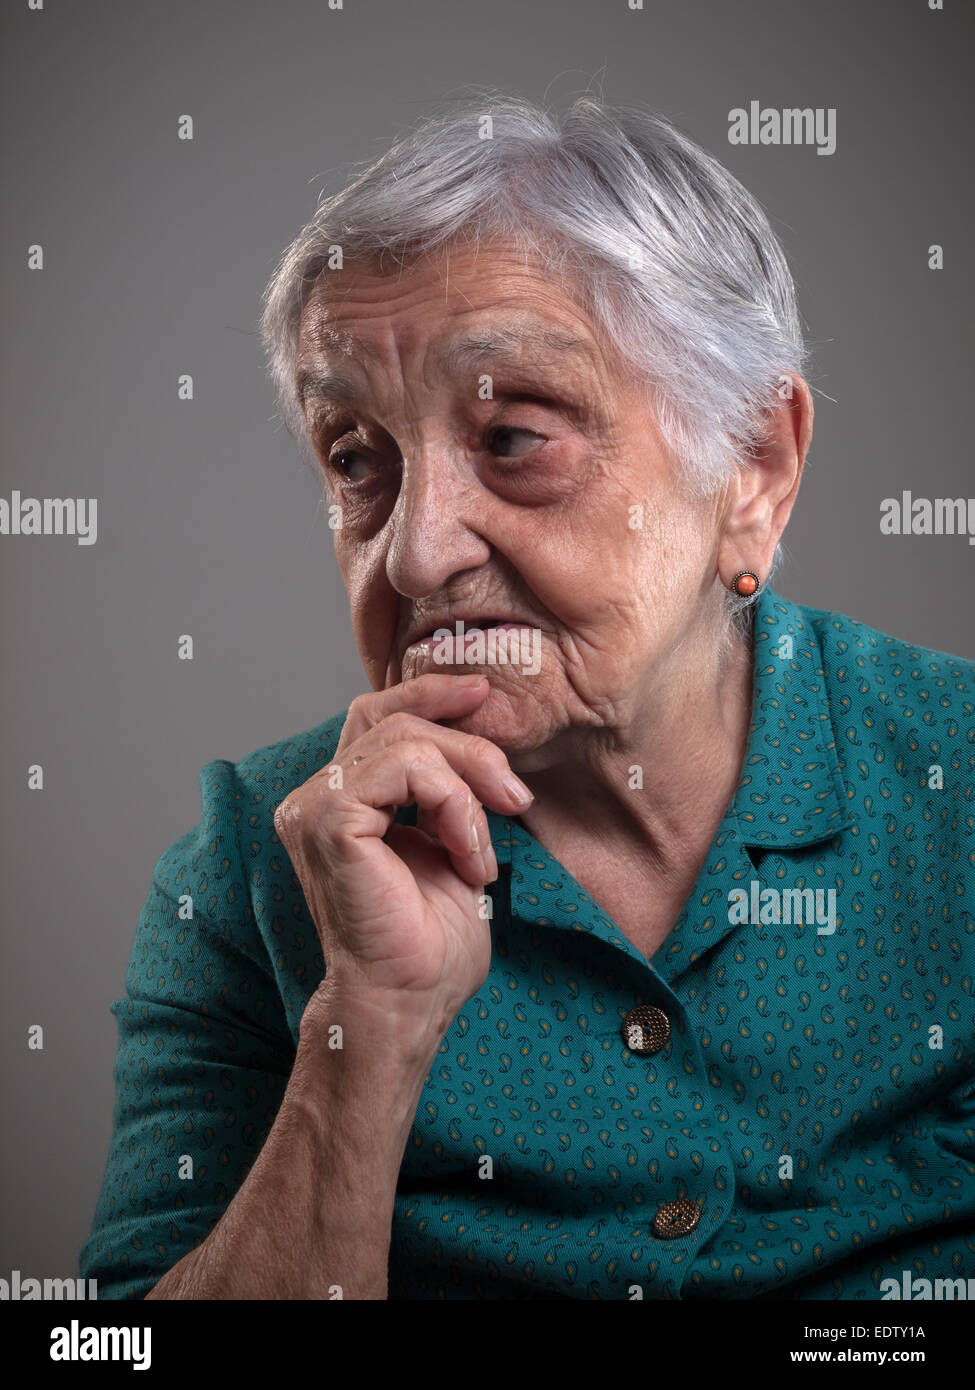 Ältere Frau Porträt in einem Studio gedreht. Alte Frau hatte ihre Hand am Kinn und sucht beiseite. Stockfoto